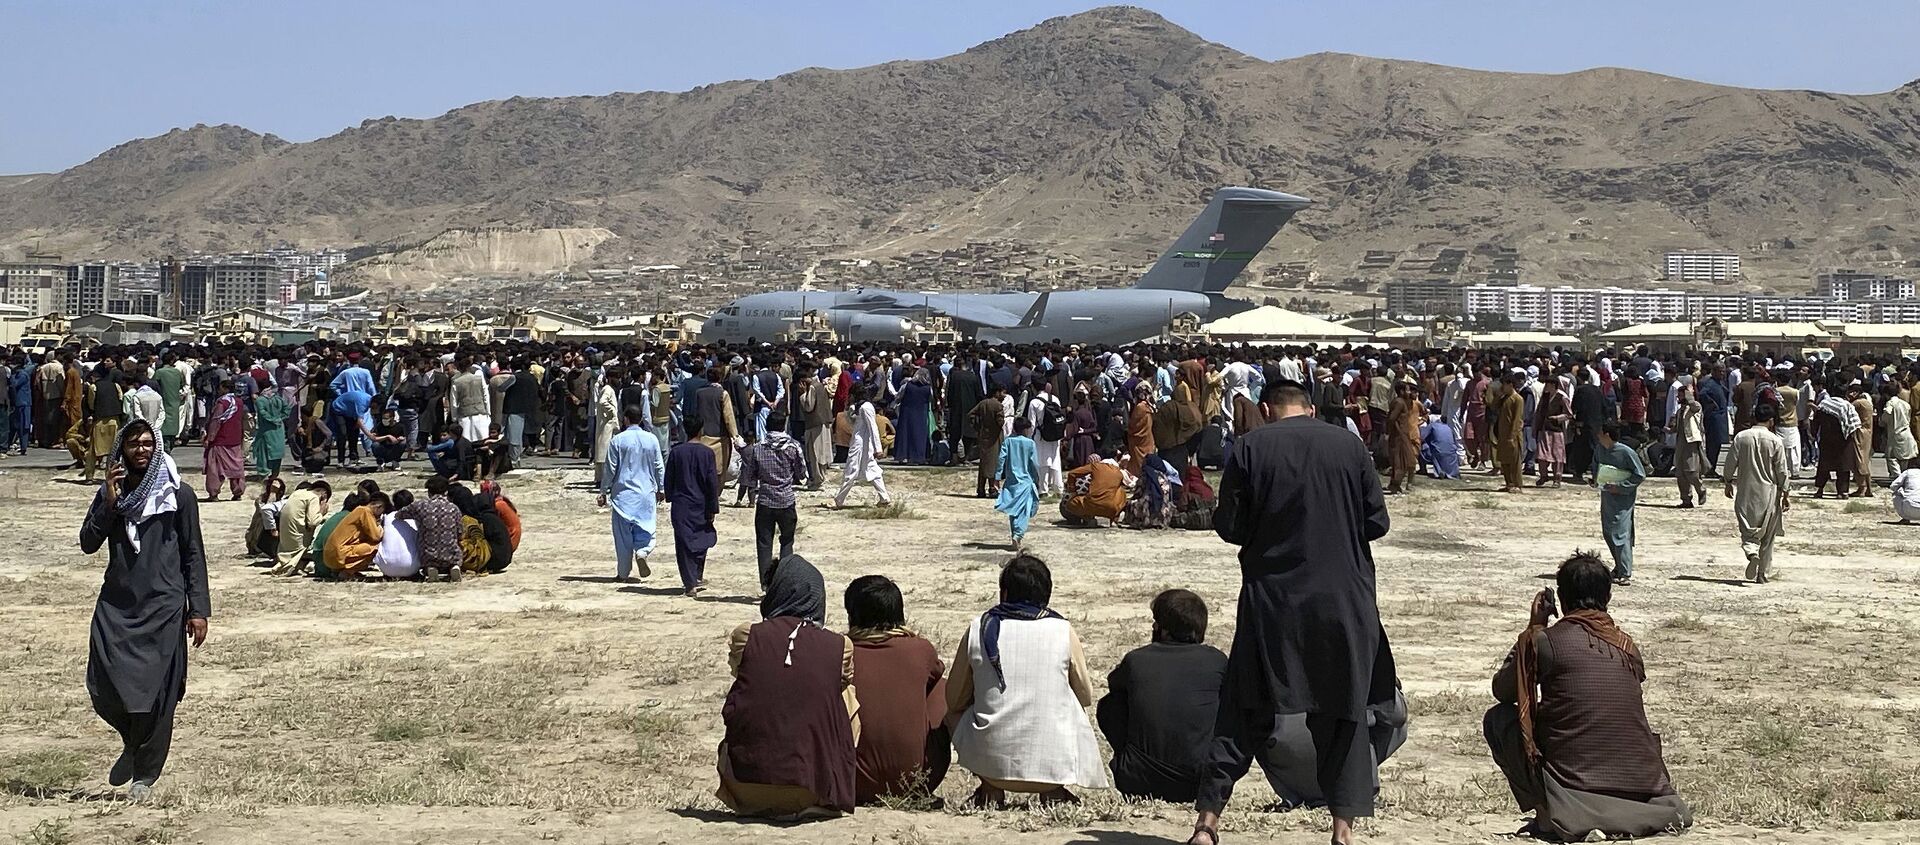 Hàng trăm người tập trung gần một chiếc máy bay vận tải C-17 của Không quân Hoa Kỳ ở vành đai sân bay quốc tế ở Kabul, Afghanistan, Thứ Hai, ngày 16 tháng 8 năm 2021 - Sputnik Việt Nam, 1920, 17.08.2021